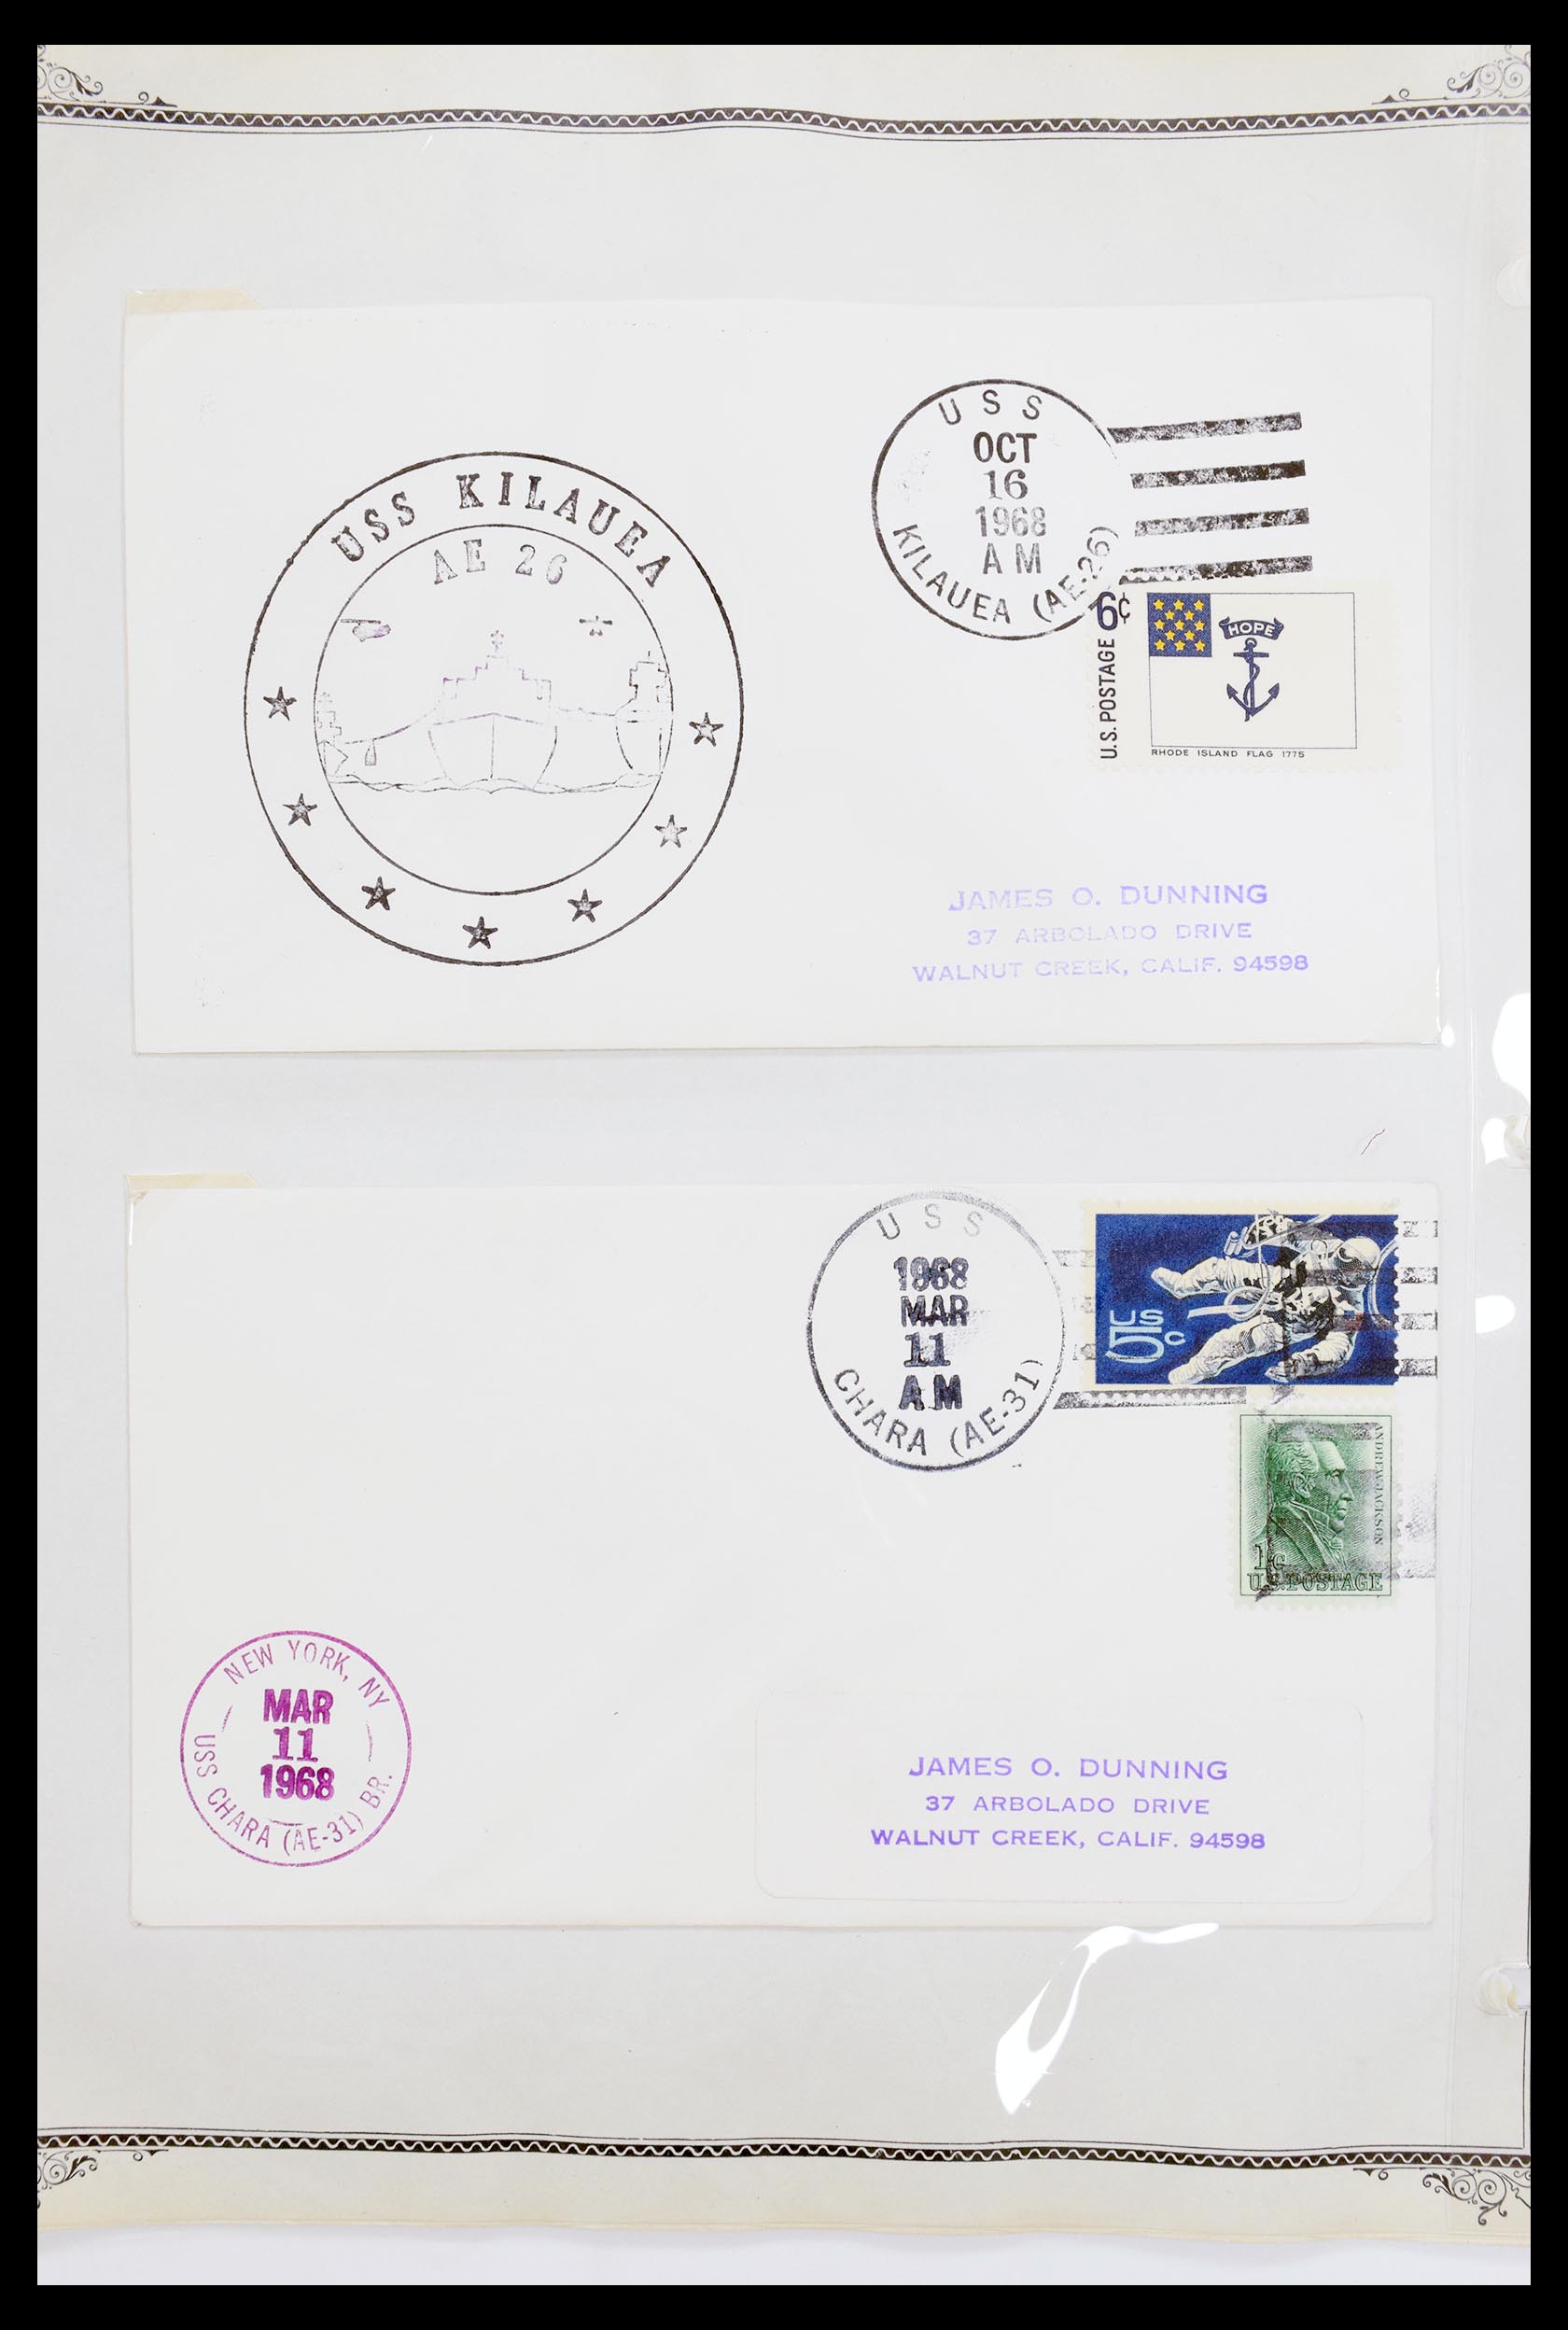 30341 023 - 30341 USA scheepspost brieven 1930-1970.